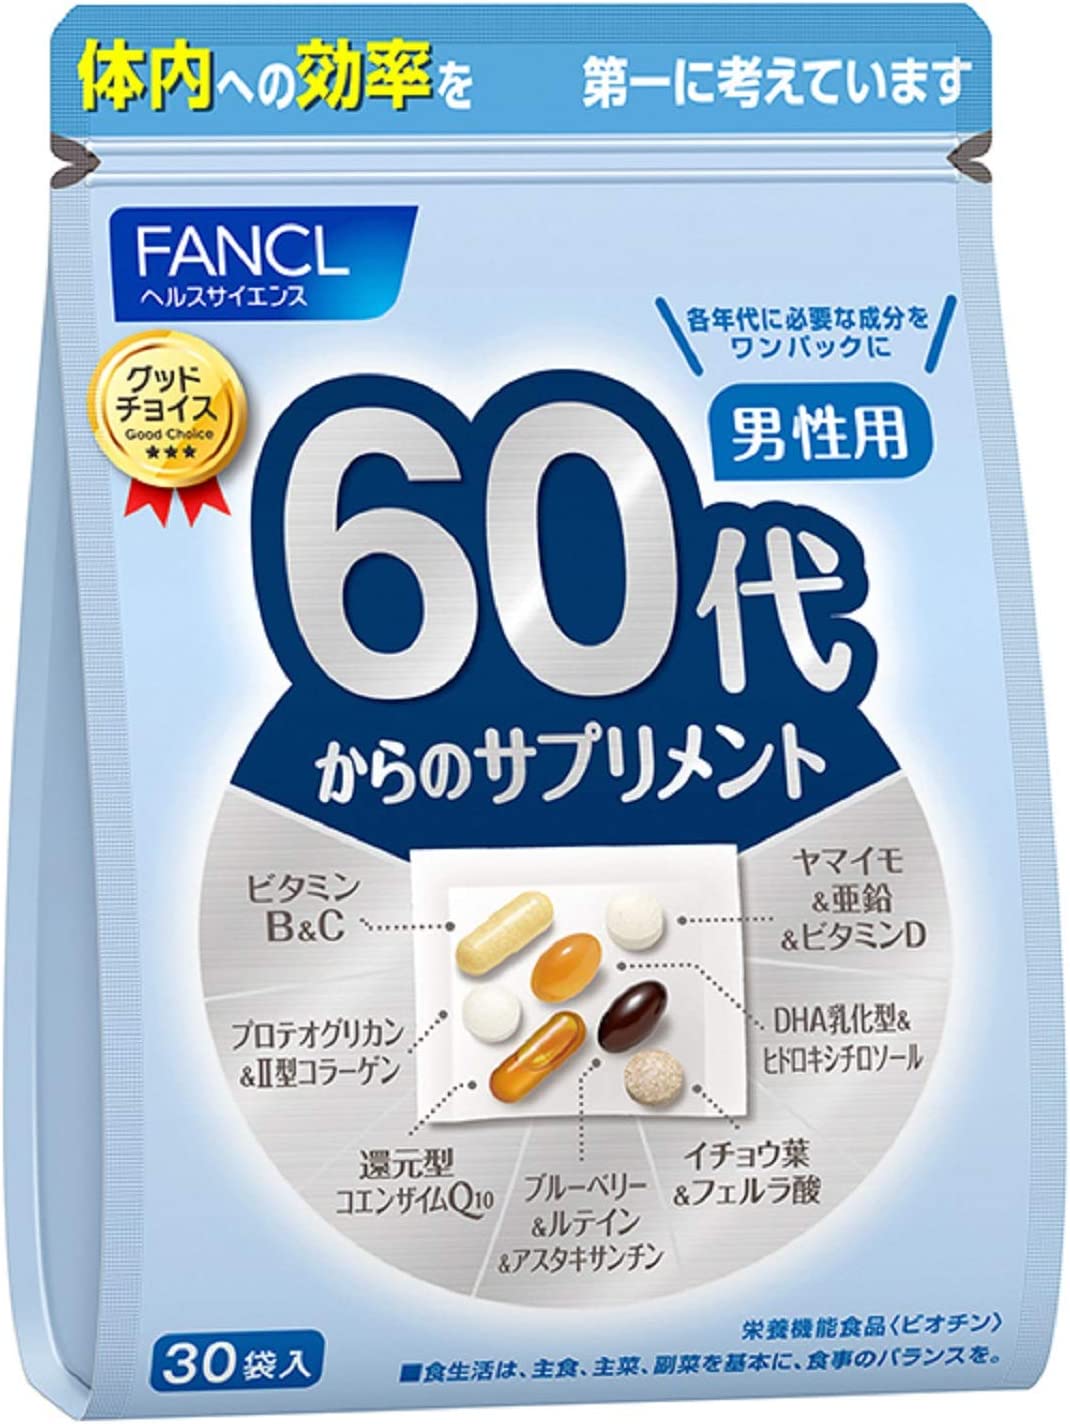 Комплекс витамин FANCL для мужчин старше 60 лет комплекс черники и гинкго очанки плюс лютеин solgar 60 капсул